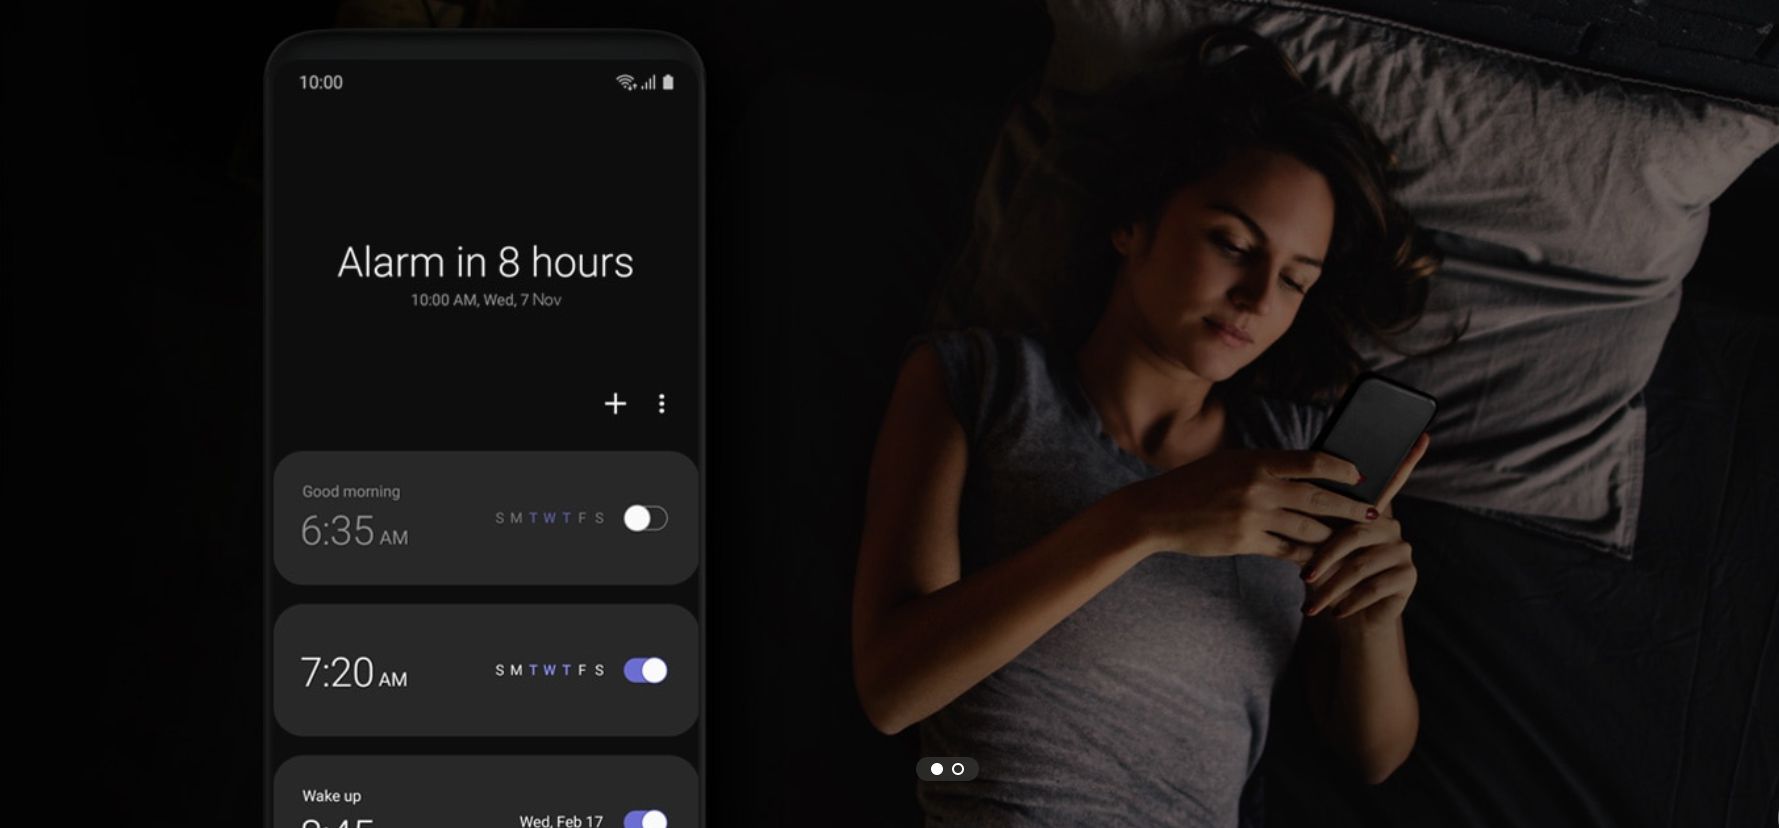 Página da web que diz "alarme em 8 horas" ao lado de uma pessoa na cama olhando para um telefone